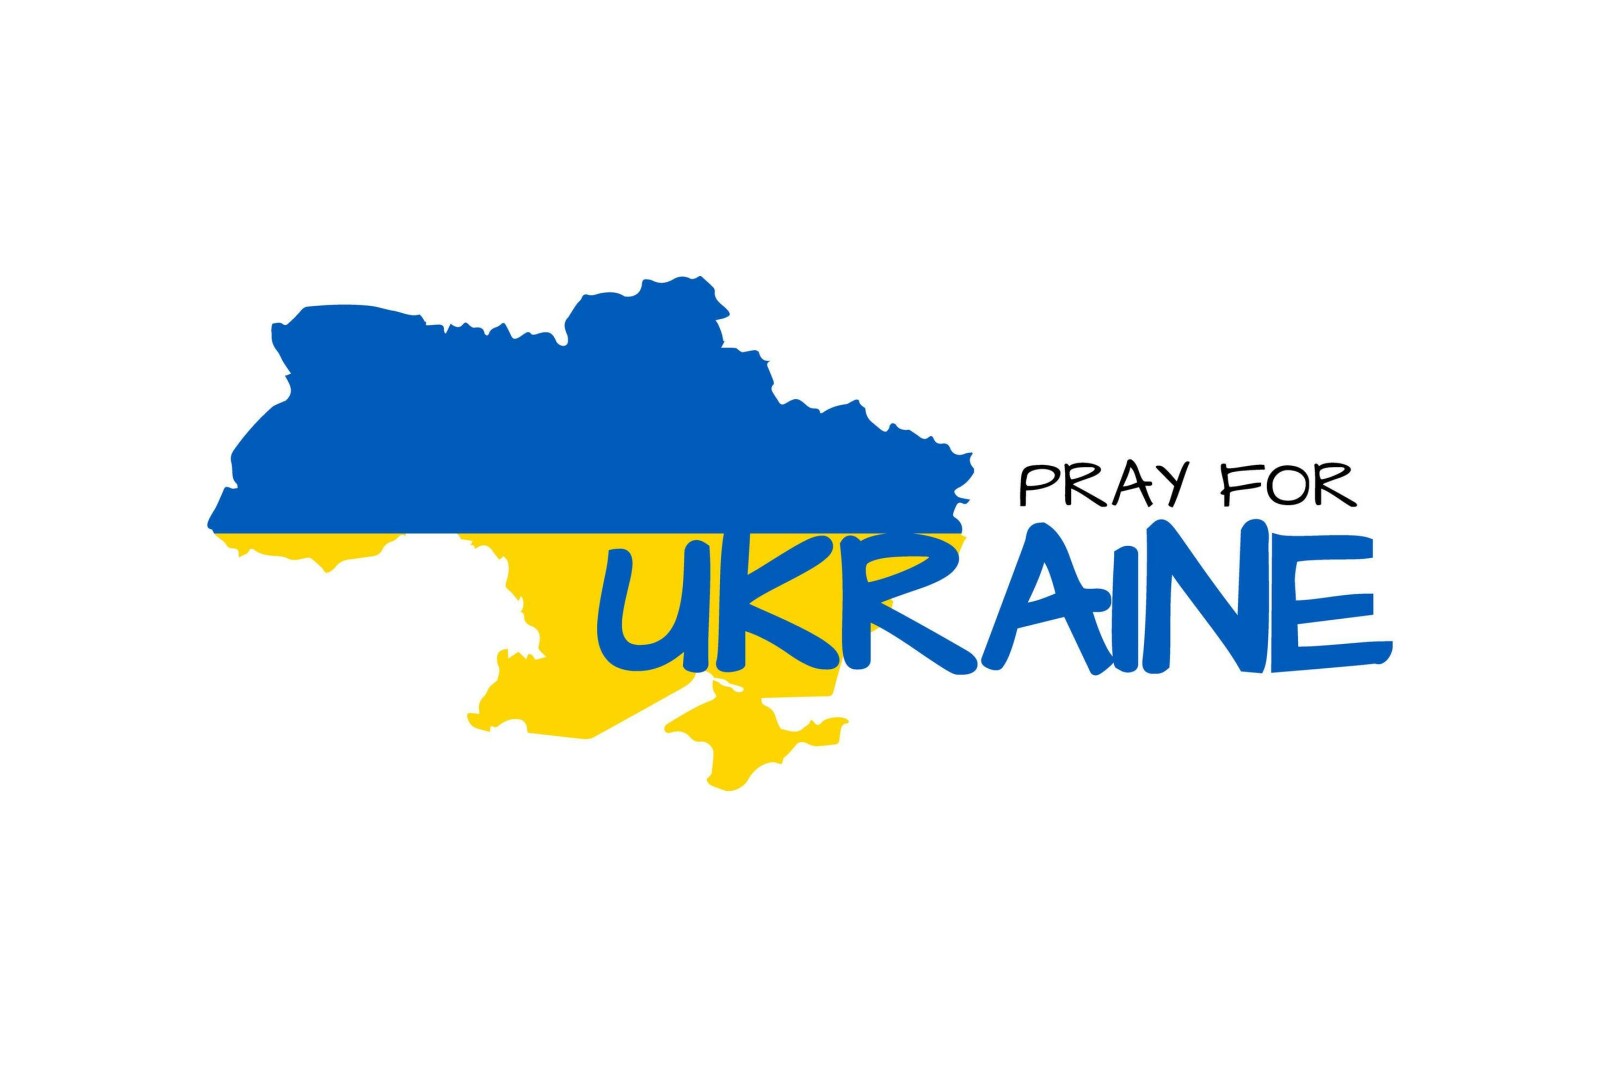 Prayer for Ukraine 